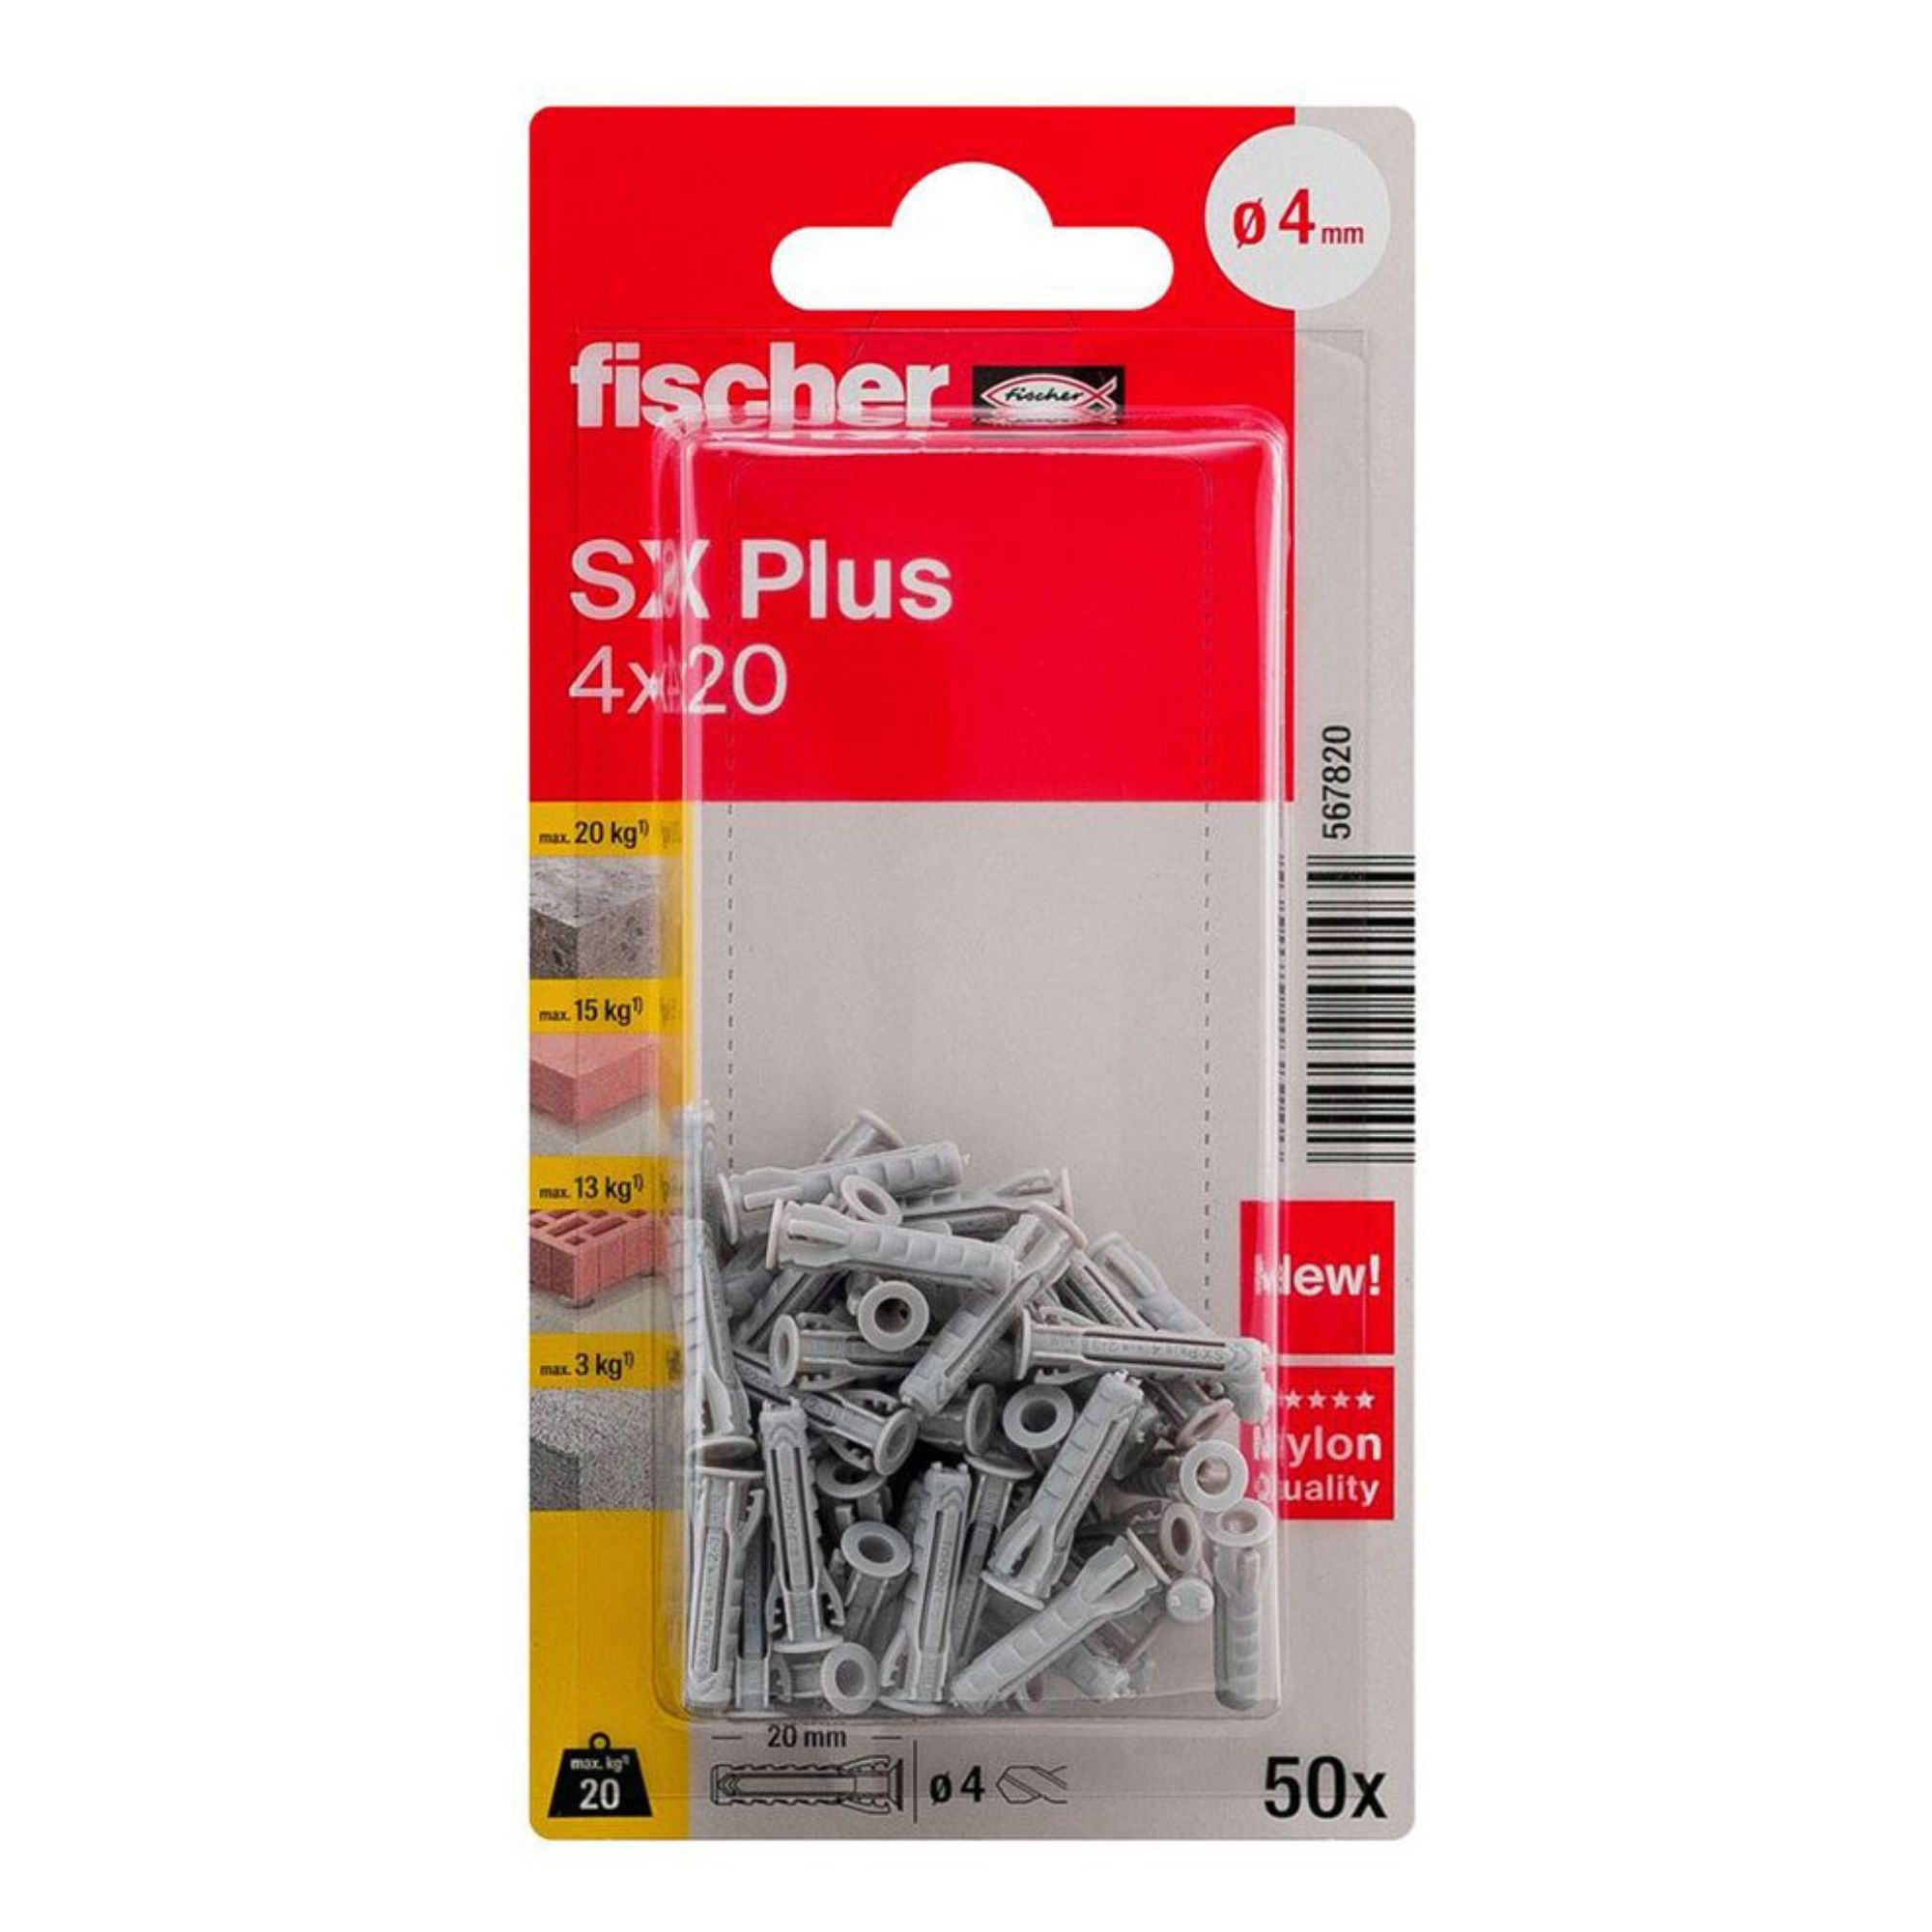 BL. 50 buchas 4x20 SX PLUS Fischer